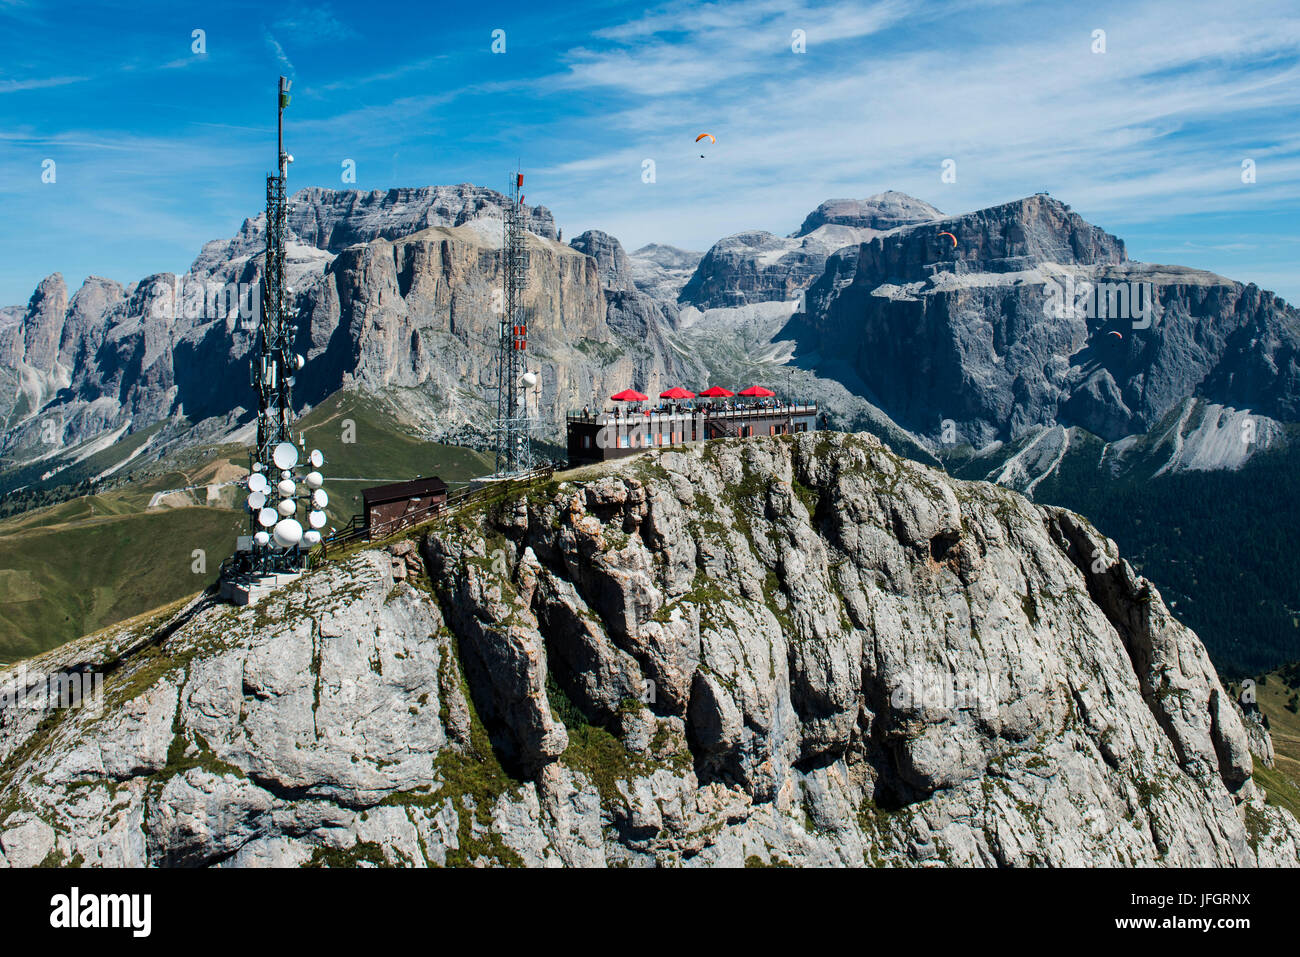 Col Rodella, wall bars, terrasse, vue sur les Dolomites, le Rifugio Col Rodella, Ferrata Col Rodella, Groupe du Sella, mât, de parapente, photo aérienne, de hautes montagnes, le Trentin, Italie Banque D'Images